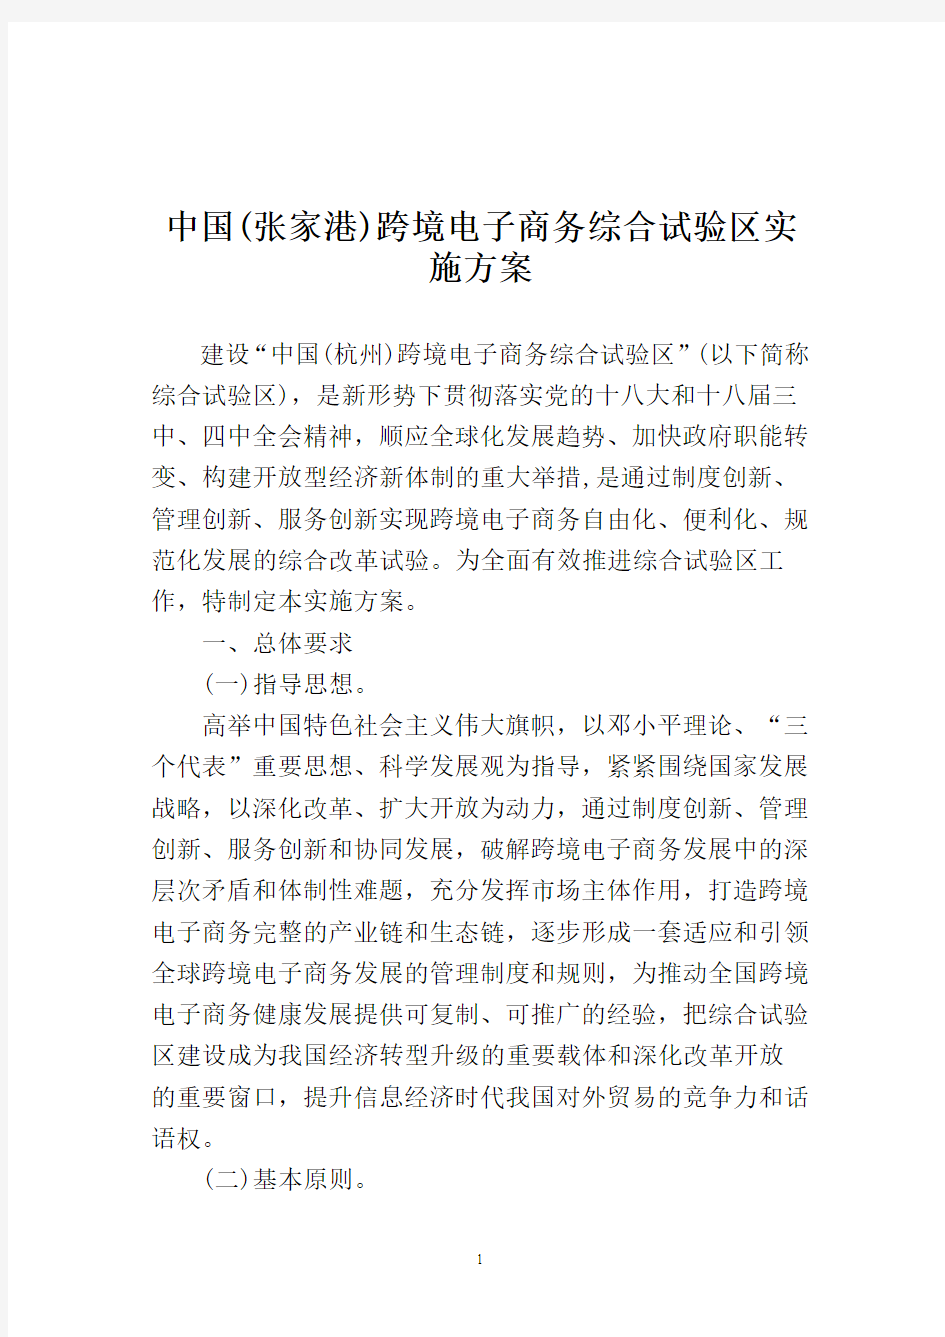 _中国(张家港)跨境电子商务综合试验区实施方案企划